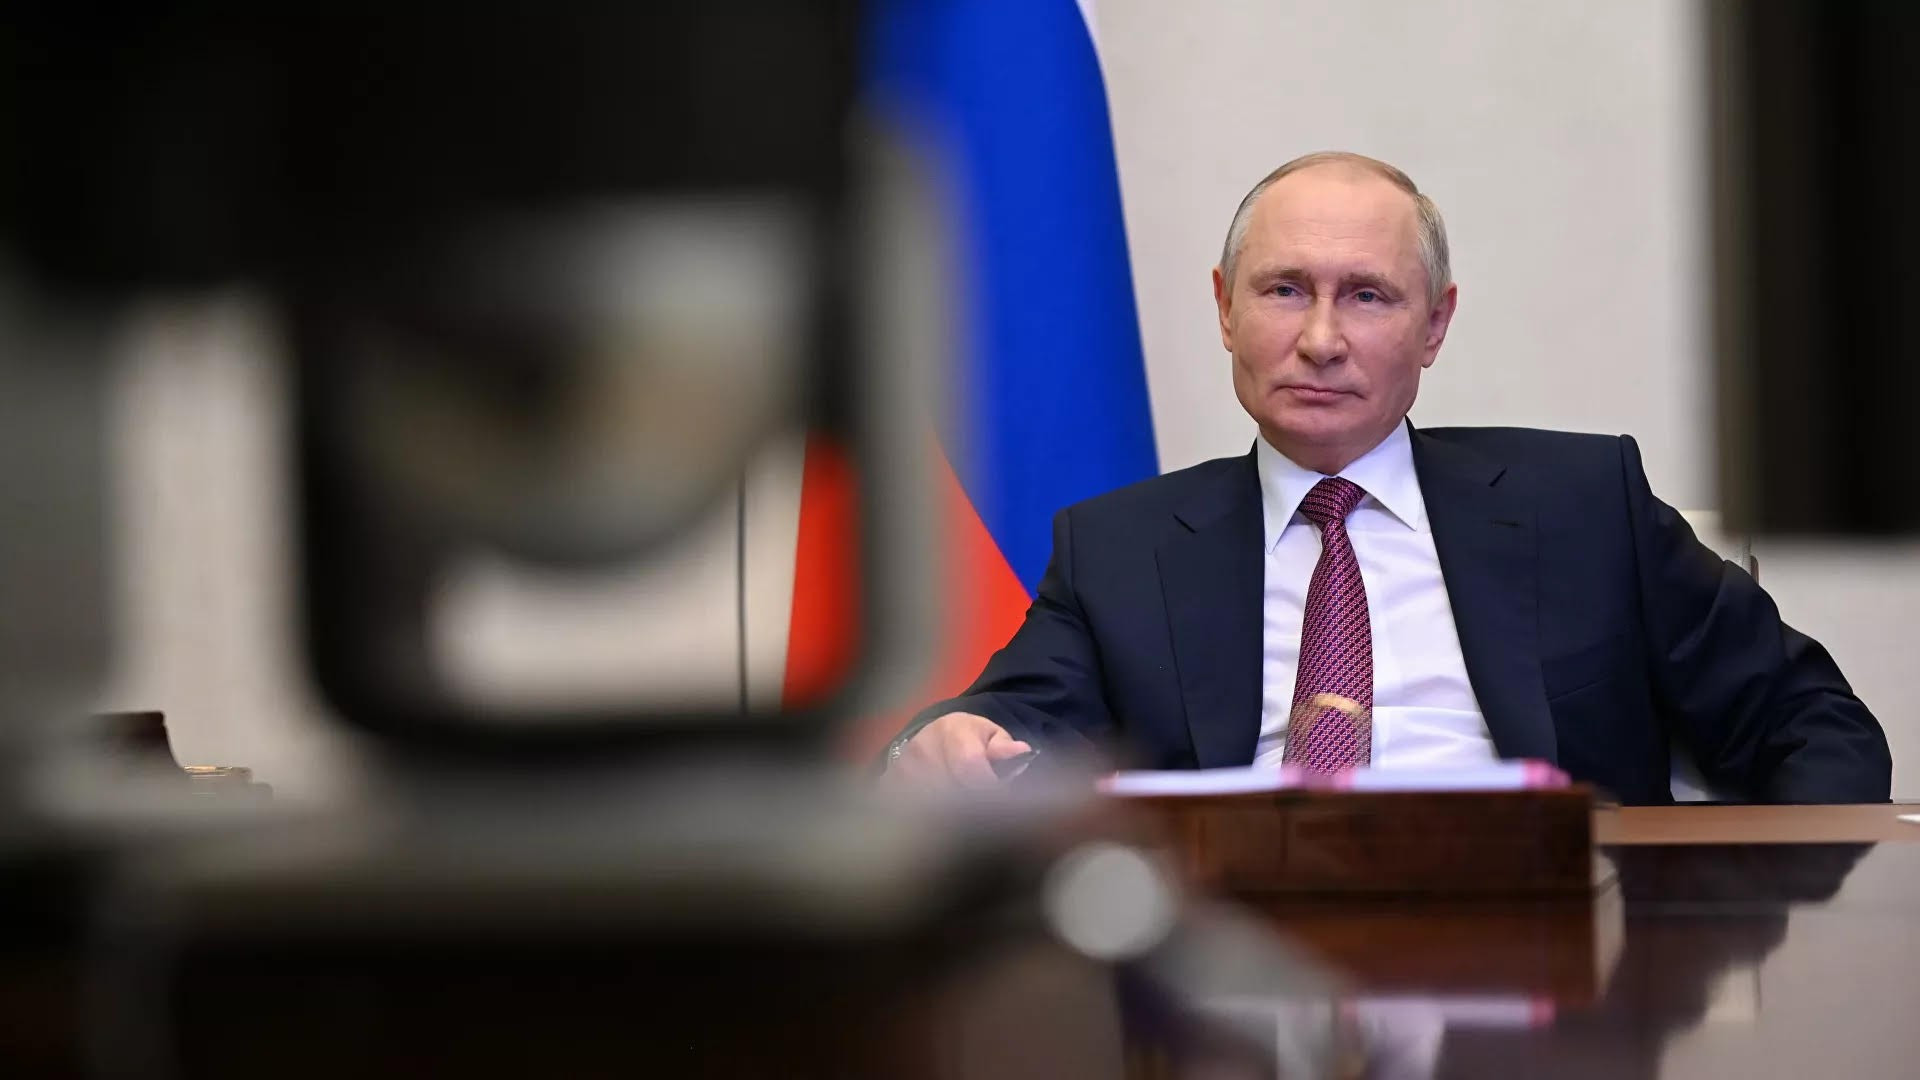 Tổng thống Putin nhấn mạnh rằng Moscow không quan tâm việc các nước láng giềng, trong đó có Ukraine, xây dựng các mối quan hệ đối ngoại như thế nào, cái chính là đừng tạo ra những nguy cơ cho nước Nga. (Nguồn: Ria Novosti)